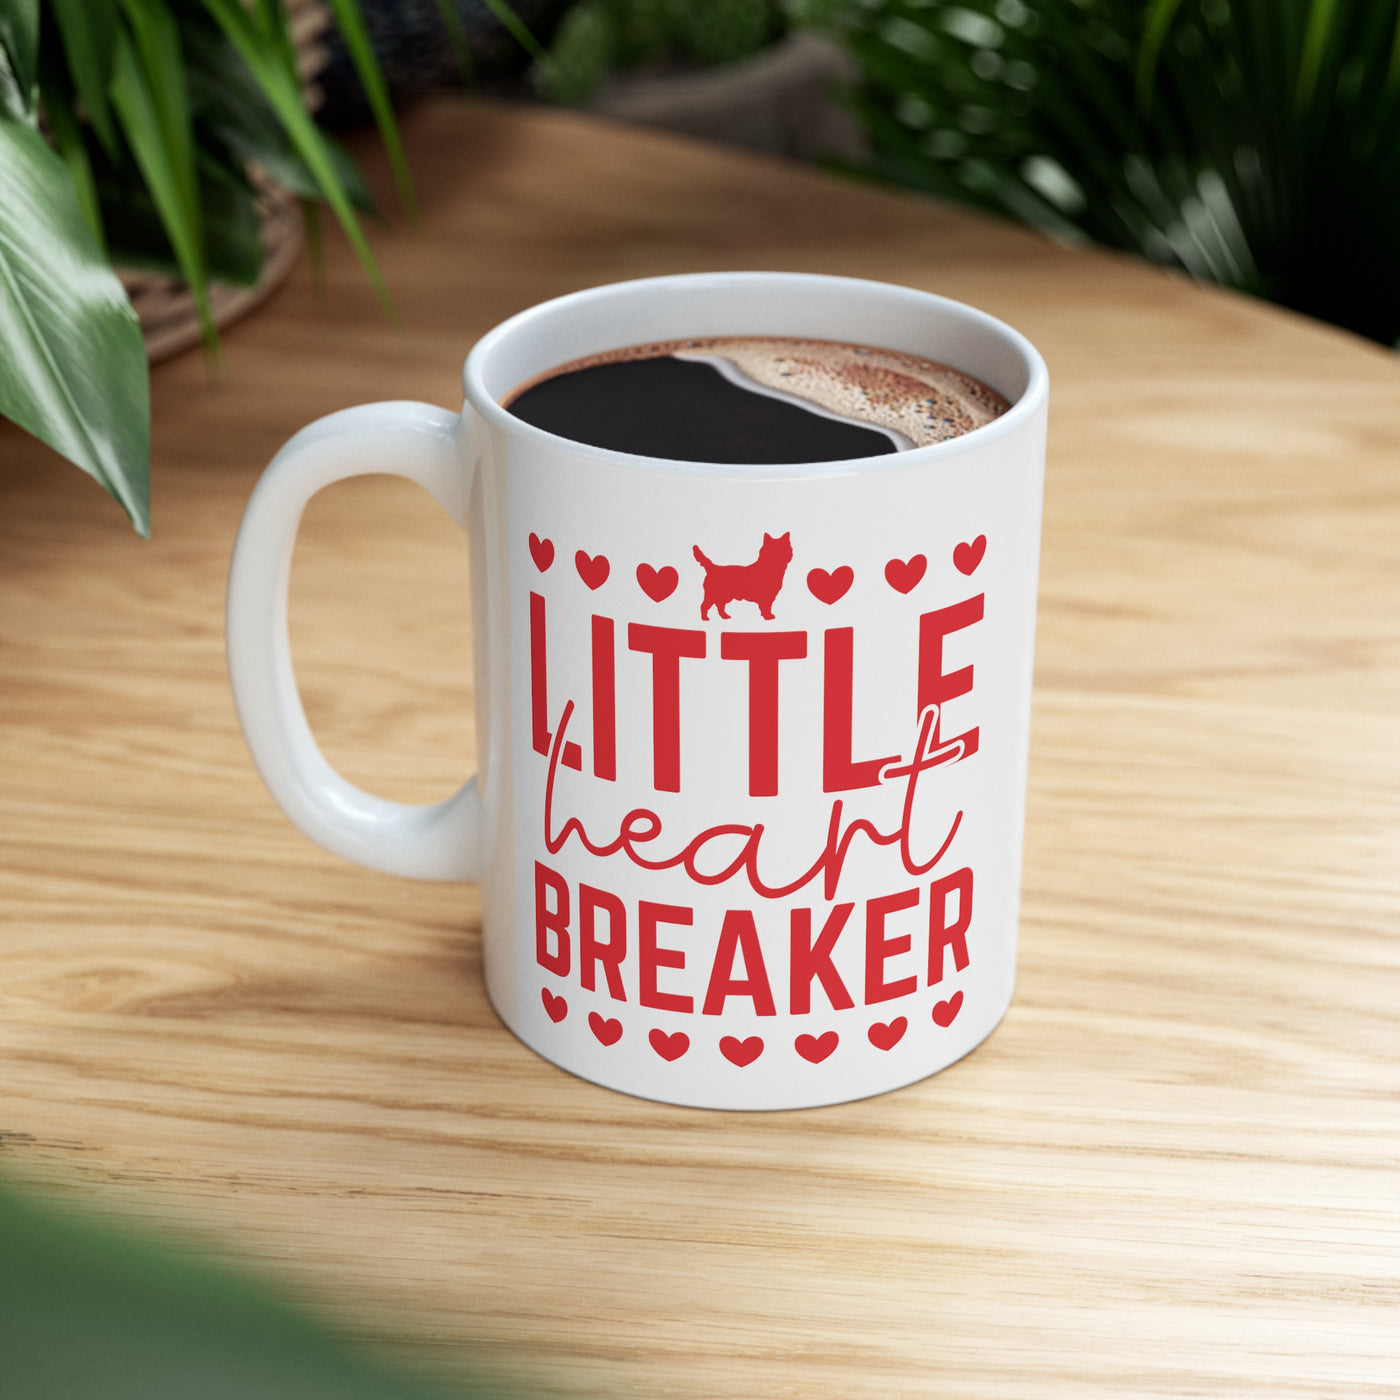 Little Heart Breaker Ceramic Mug  11oz